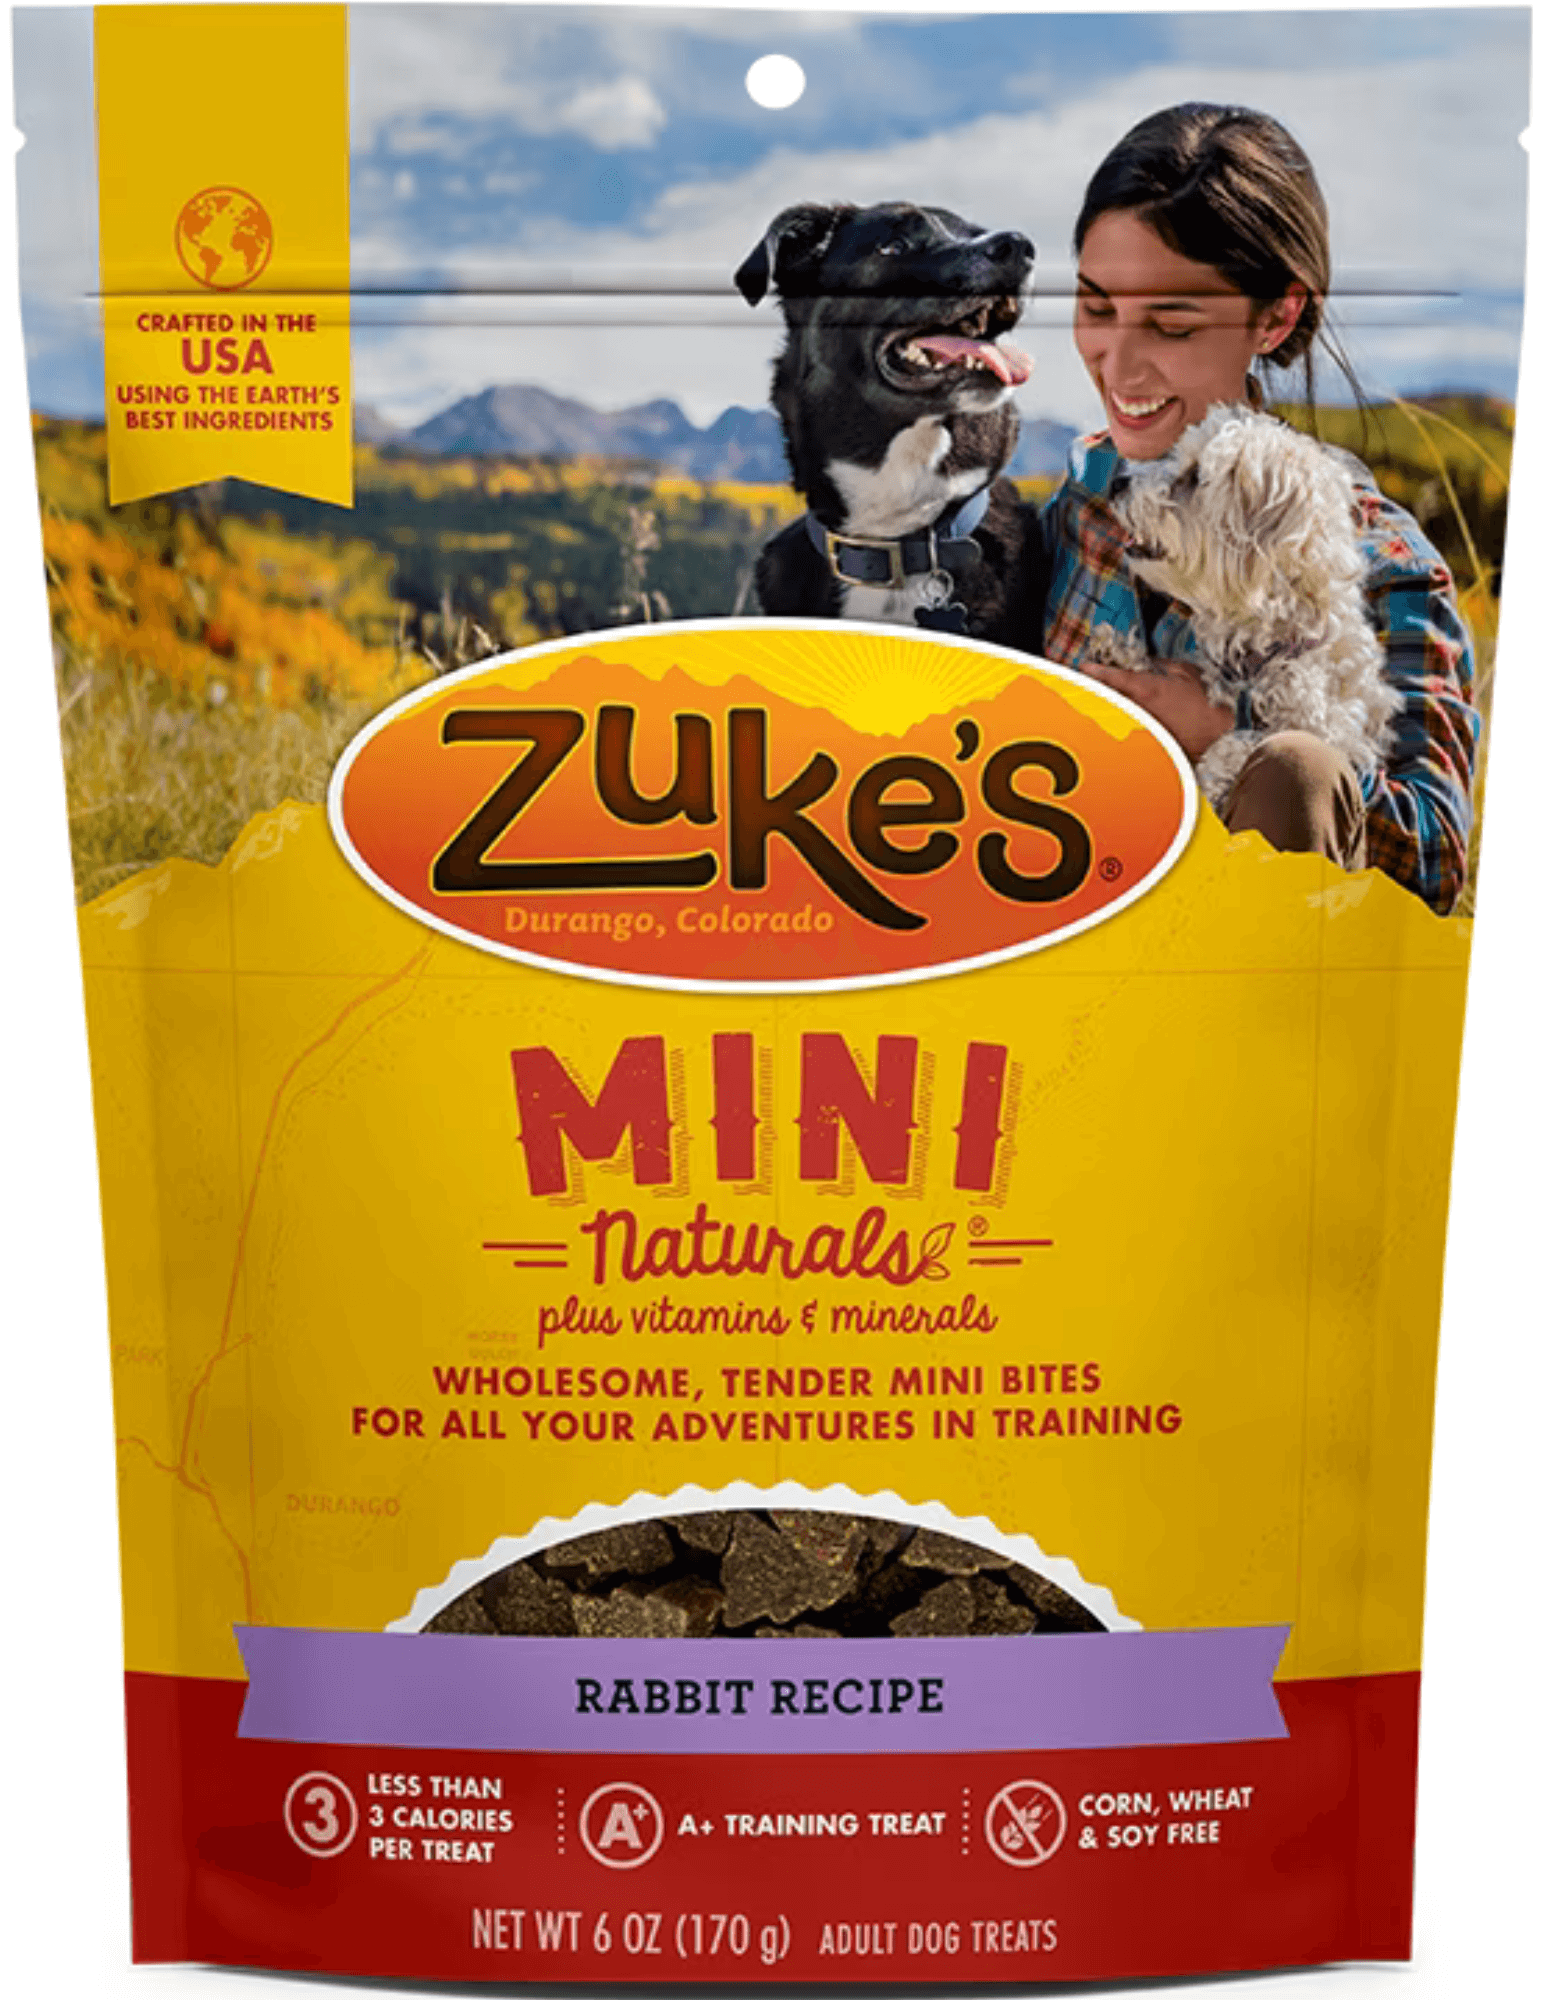 Zuke's - Mini Naturals - Rabbit Recipe Treats (For Dogs)